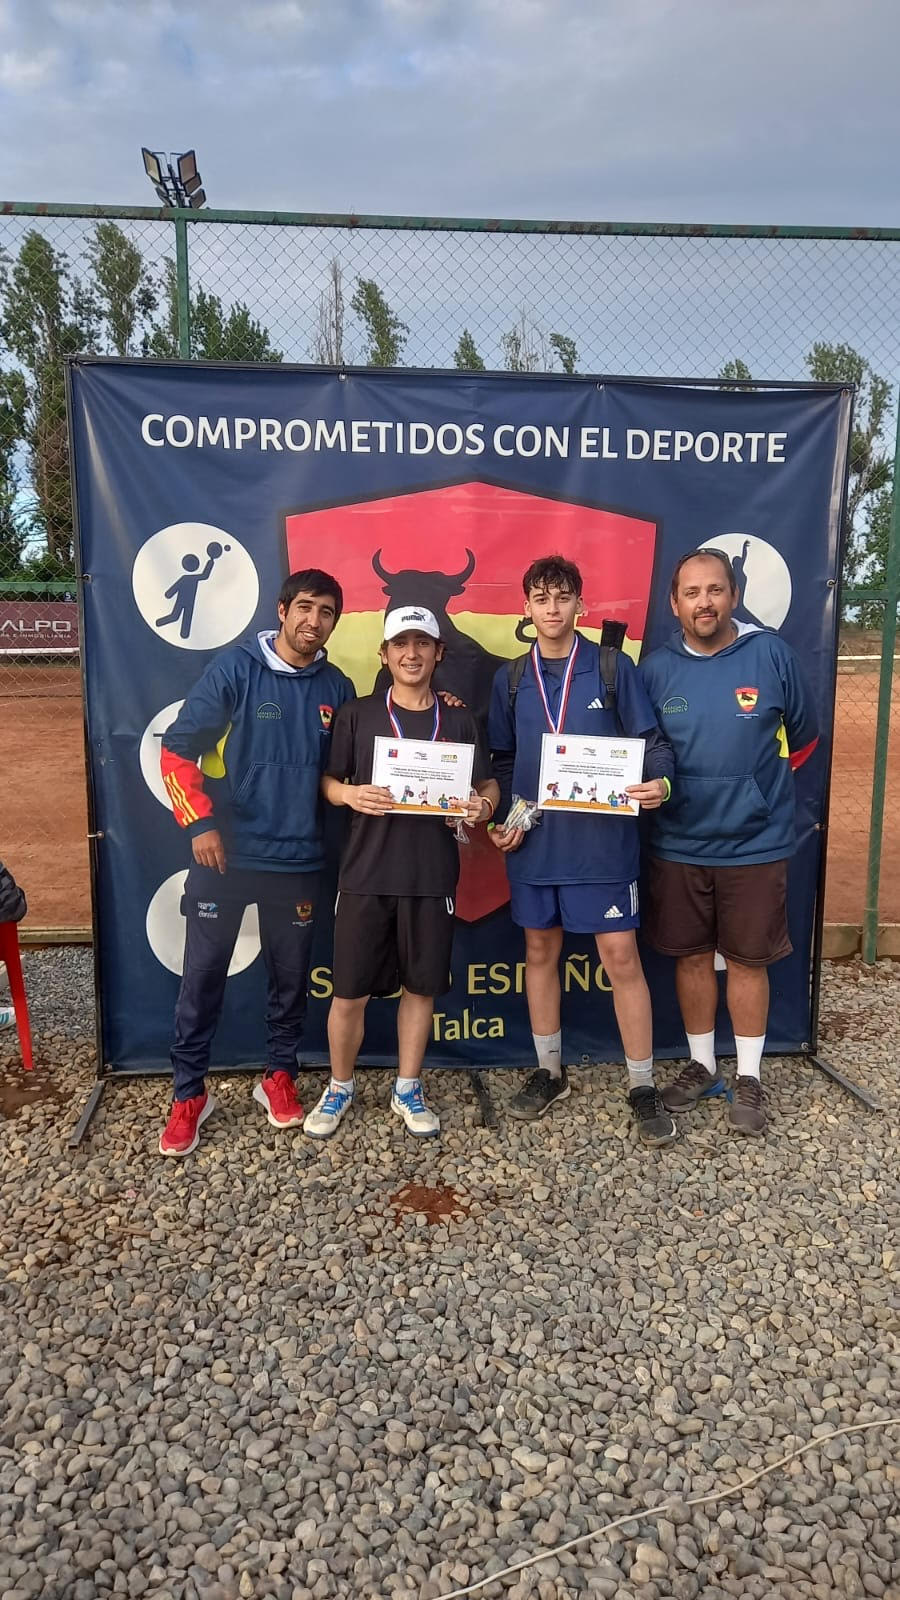 Curicanos destacan en torneo de tenis en la ciudad de Talca